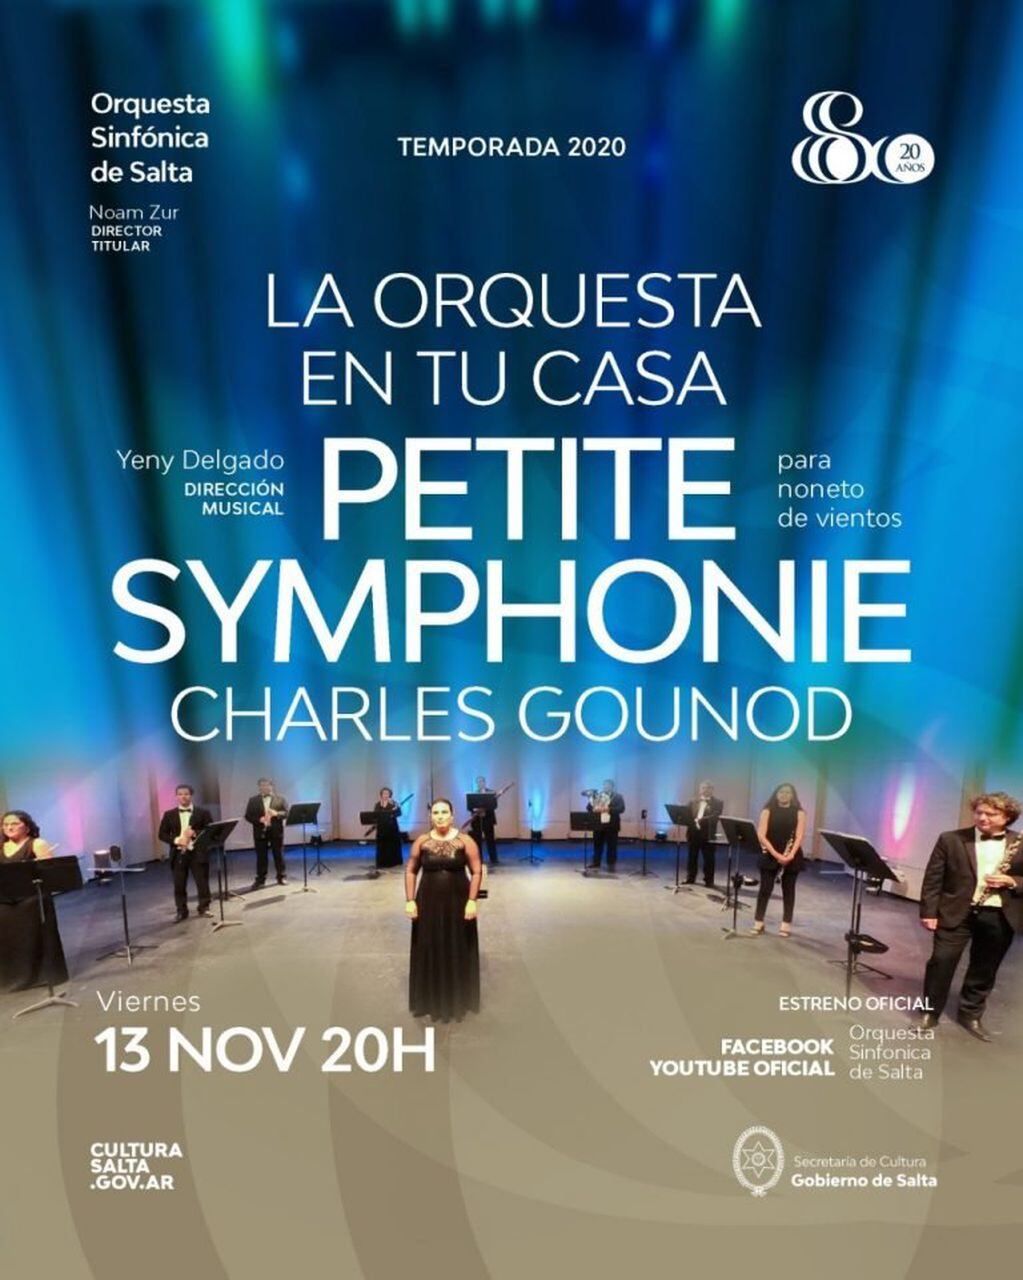 La Orquesta en tu Casa trae la Petite Symphonie de Charles Gounod (Orquesta Sinfónica de Salta)